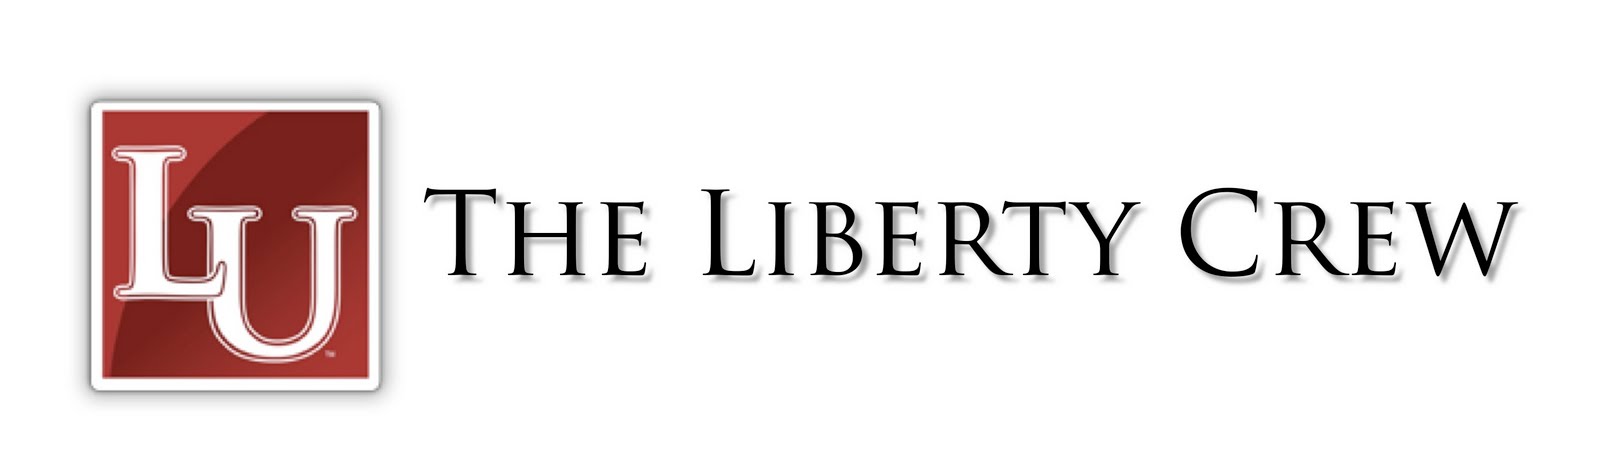 The Liberty Crew